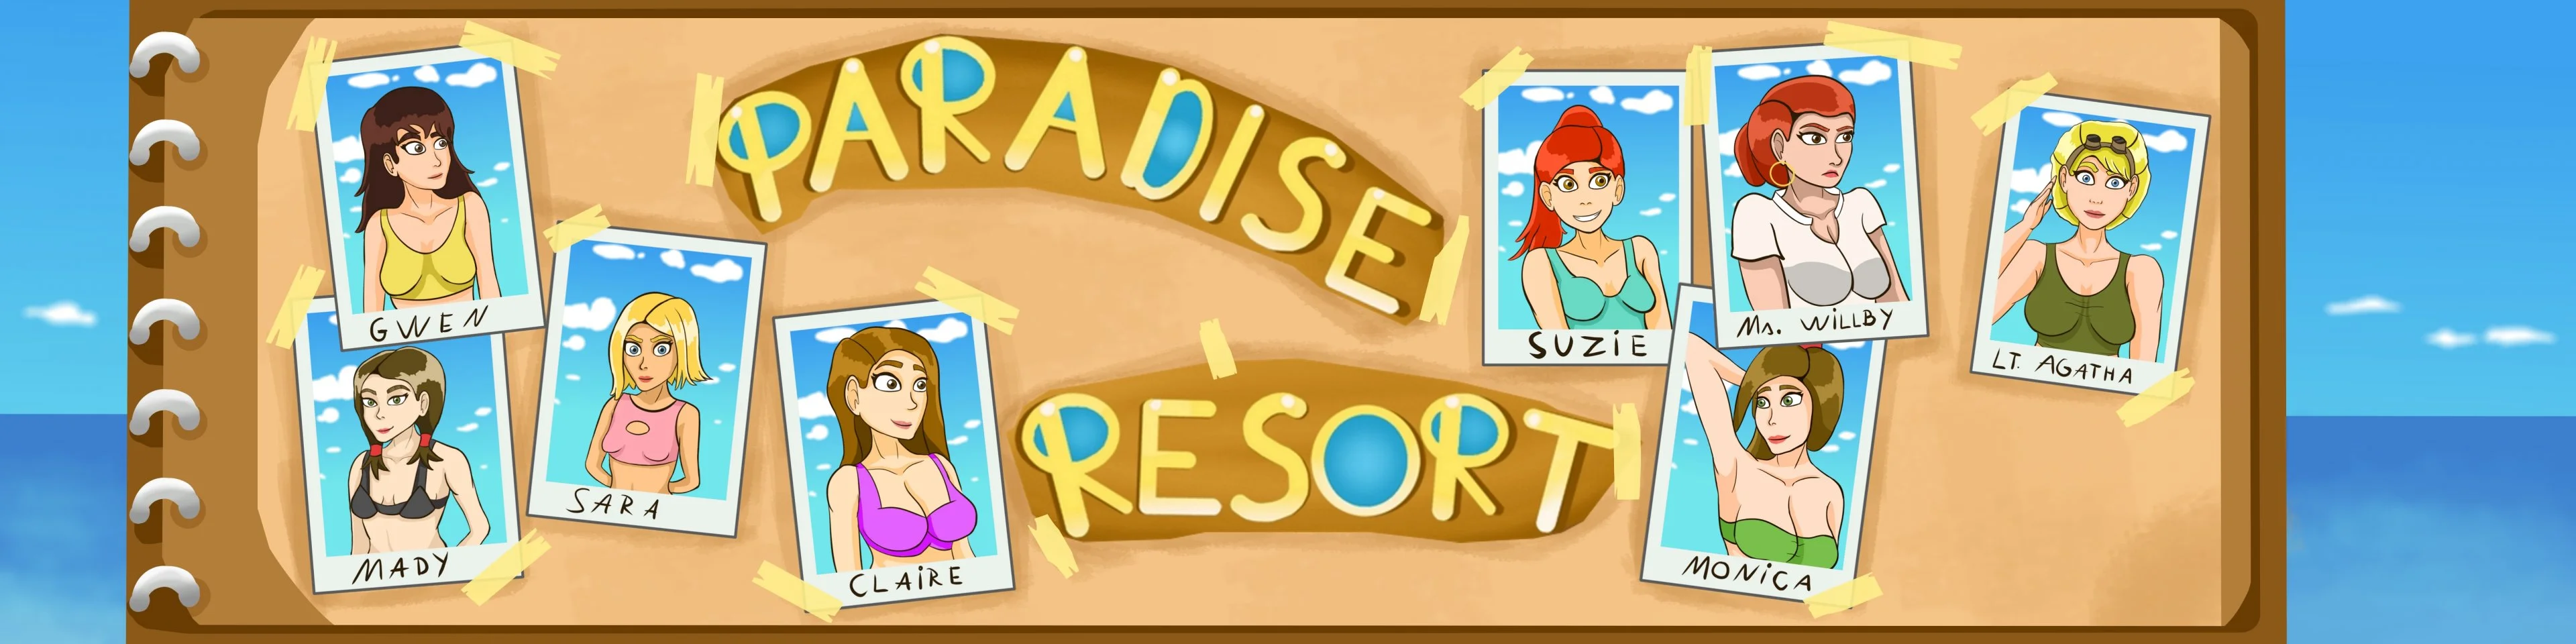 Paradise Resort [v0.1] main image